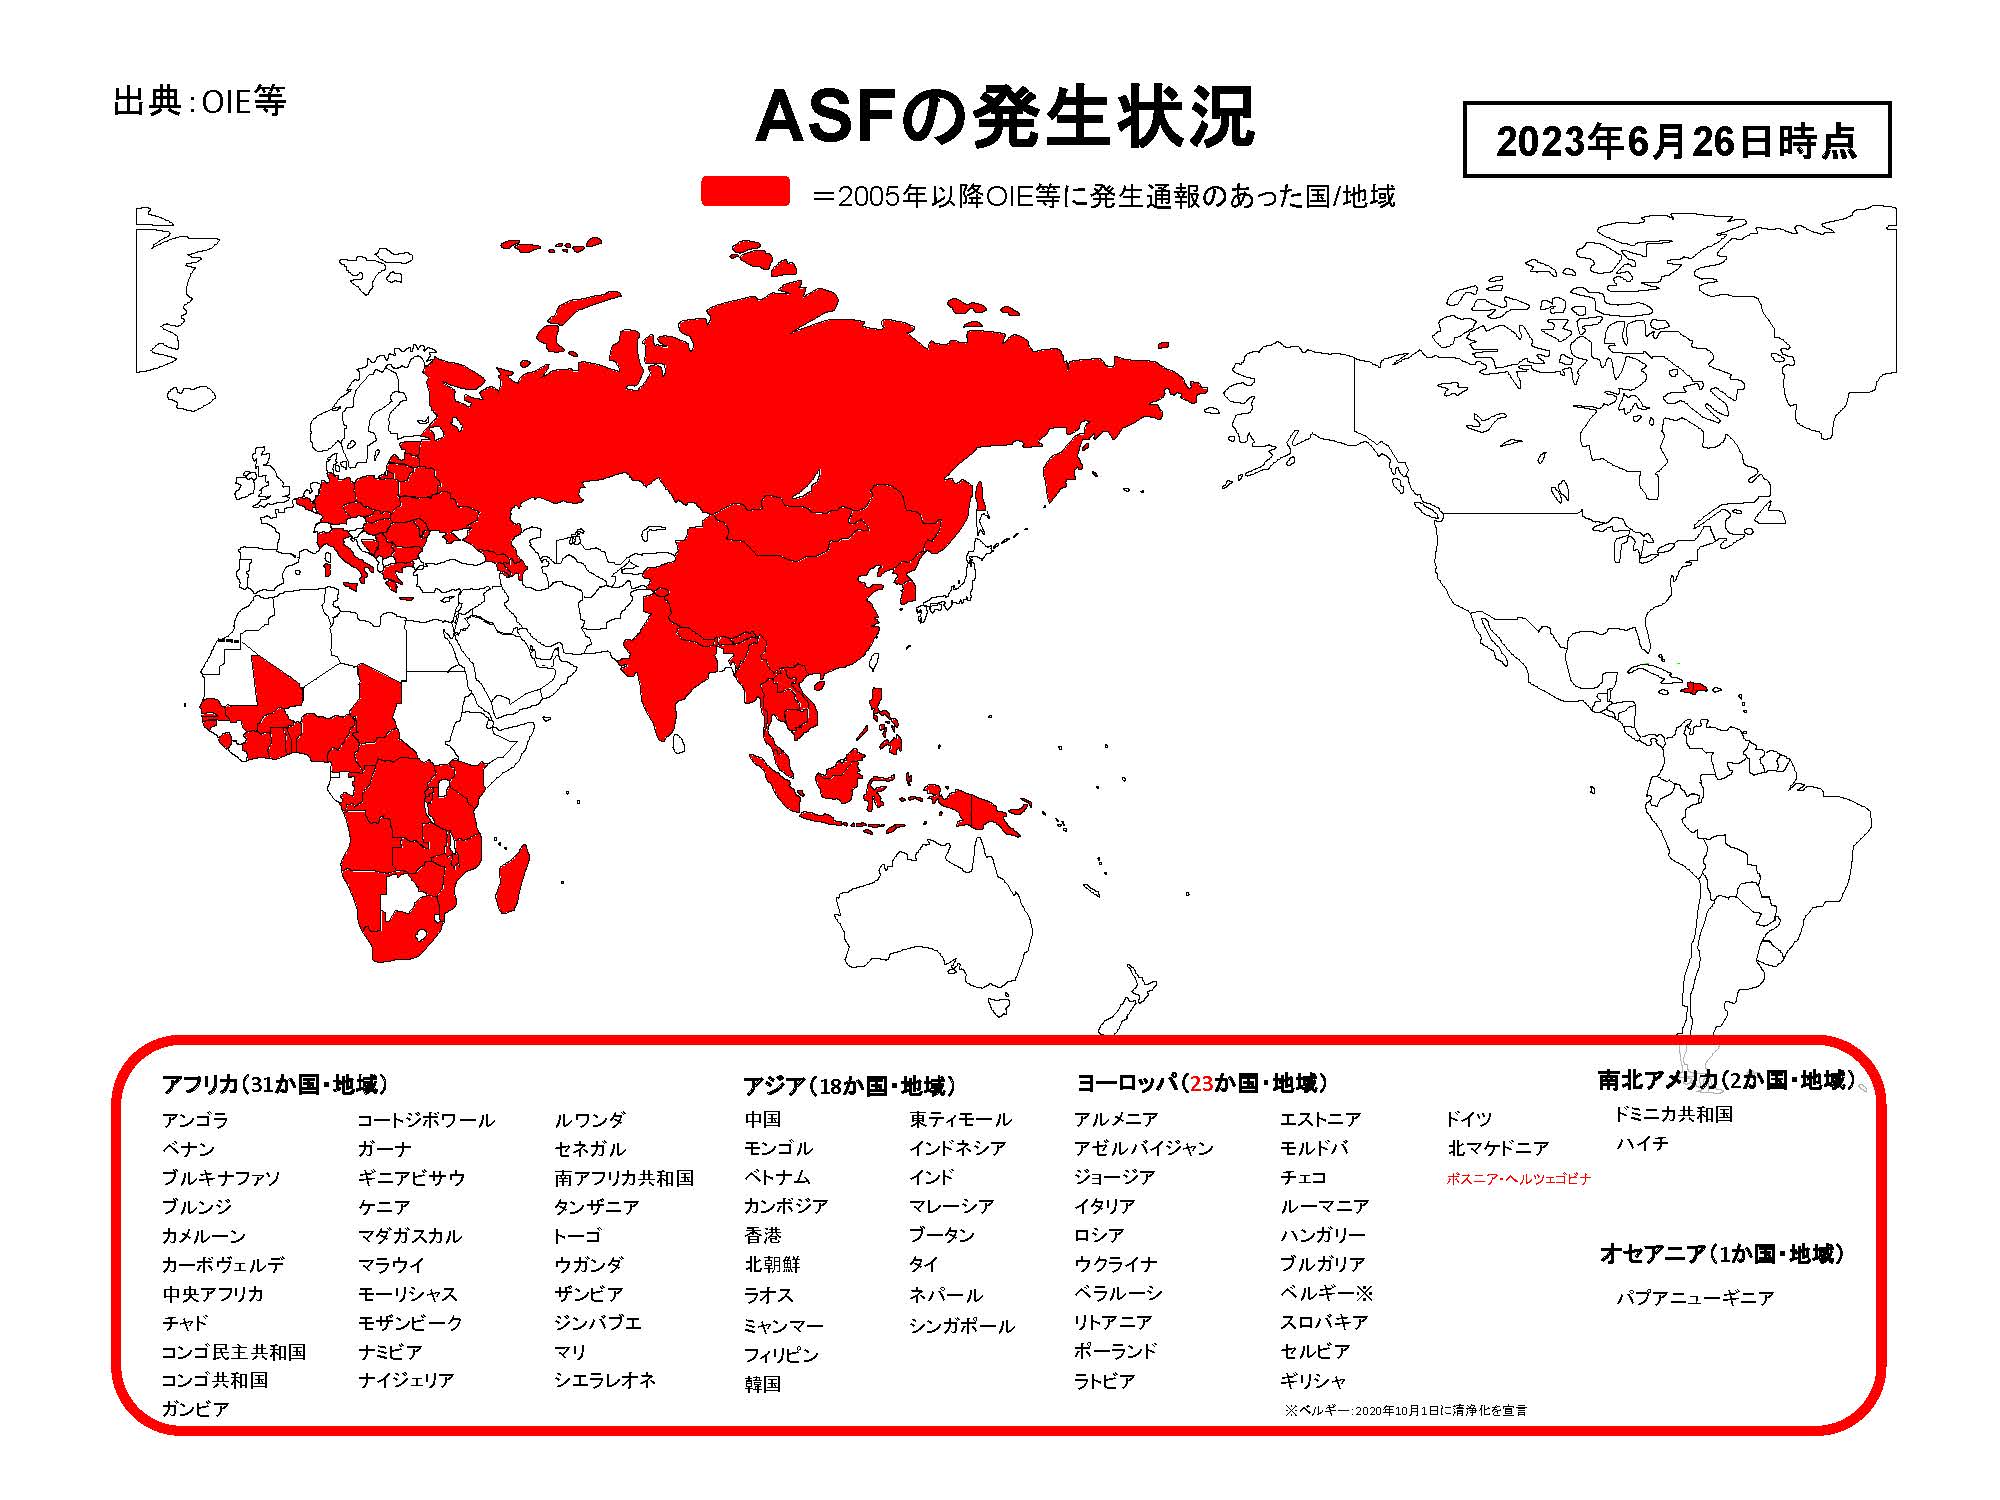 2020年2月12日現在のASFの発生状況を示した世界地図のイラスト（提供は農林水産省、出典はOIE等）。2005年から2020年2月12日までに発生通報があったのはアフリカ30か国、アジア12か国・地域、ヨーロッパ20か国。